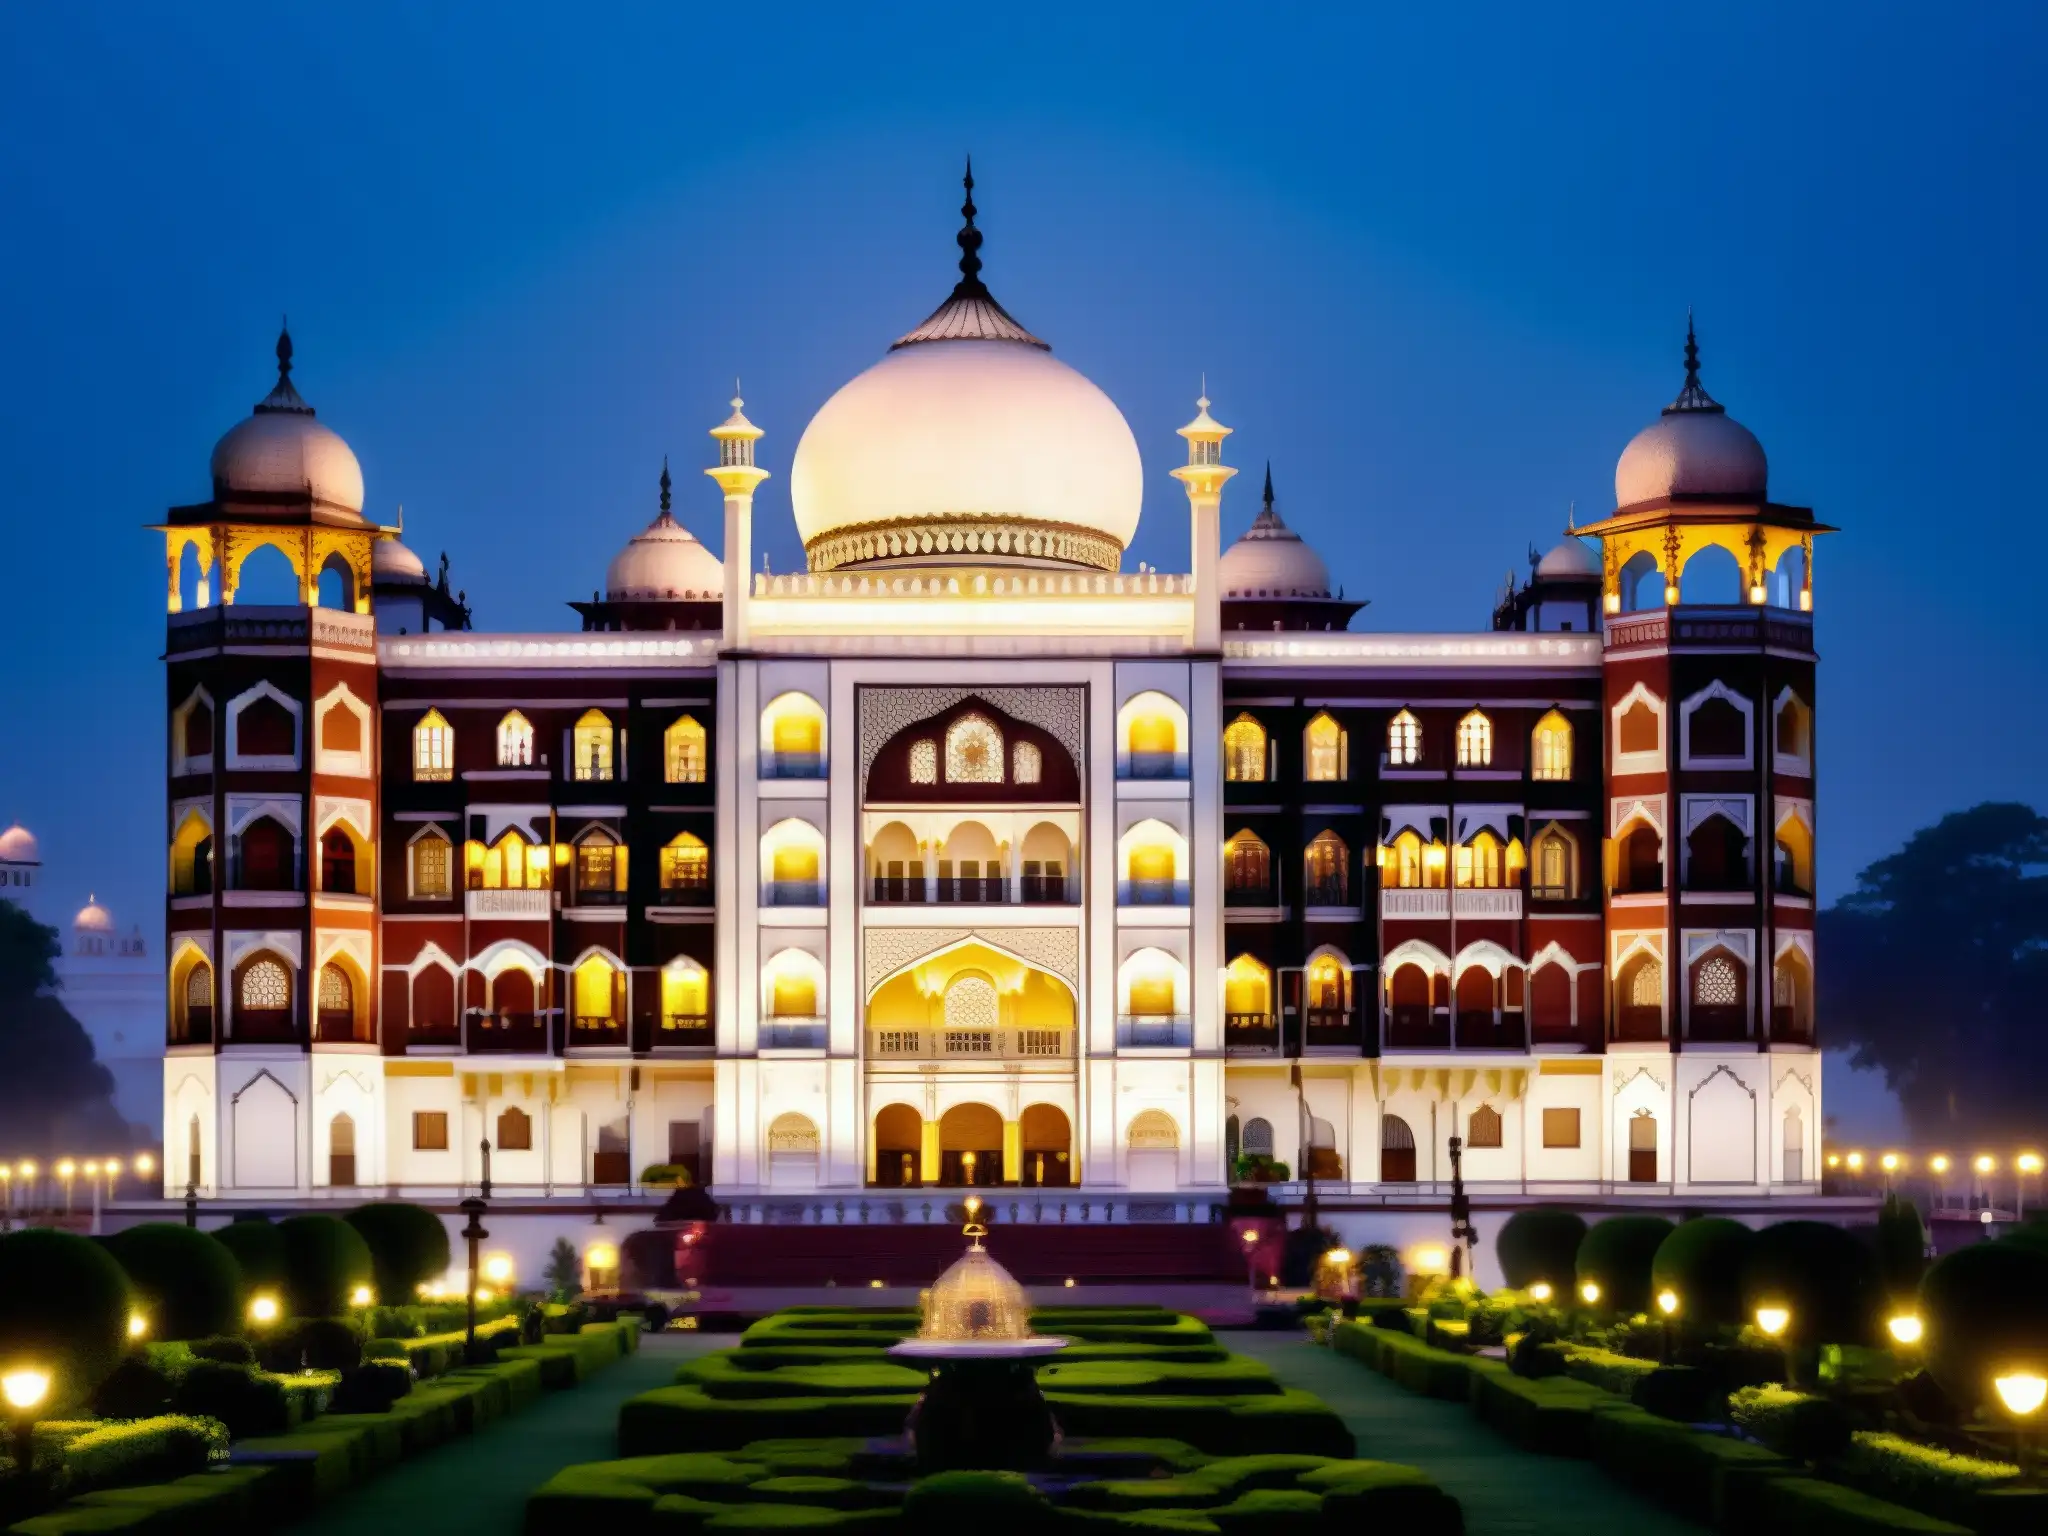 Imponente fachada del Hotel Taj Mahal Palace, iluminada por luces doradas en una noche brumosa, evocando elegancia y misterio